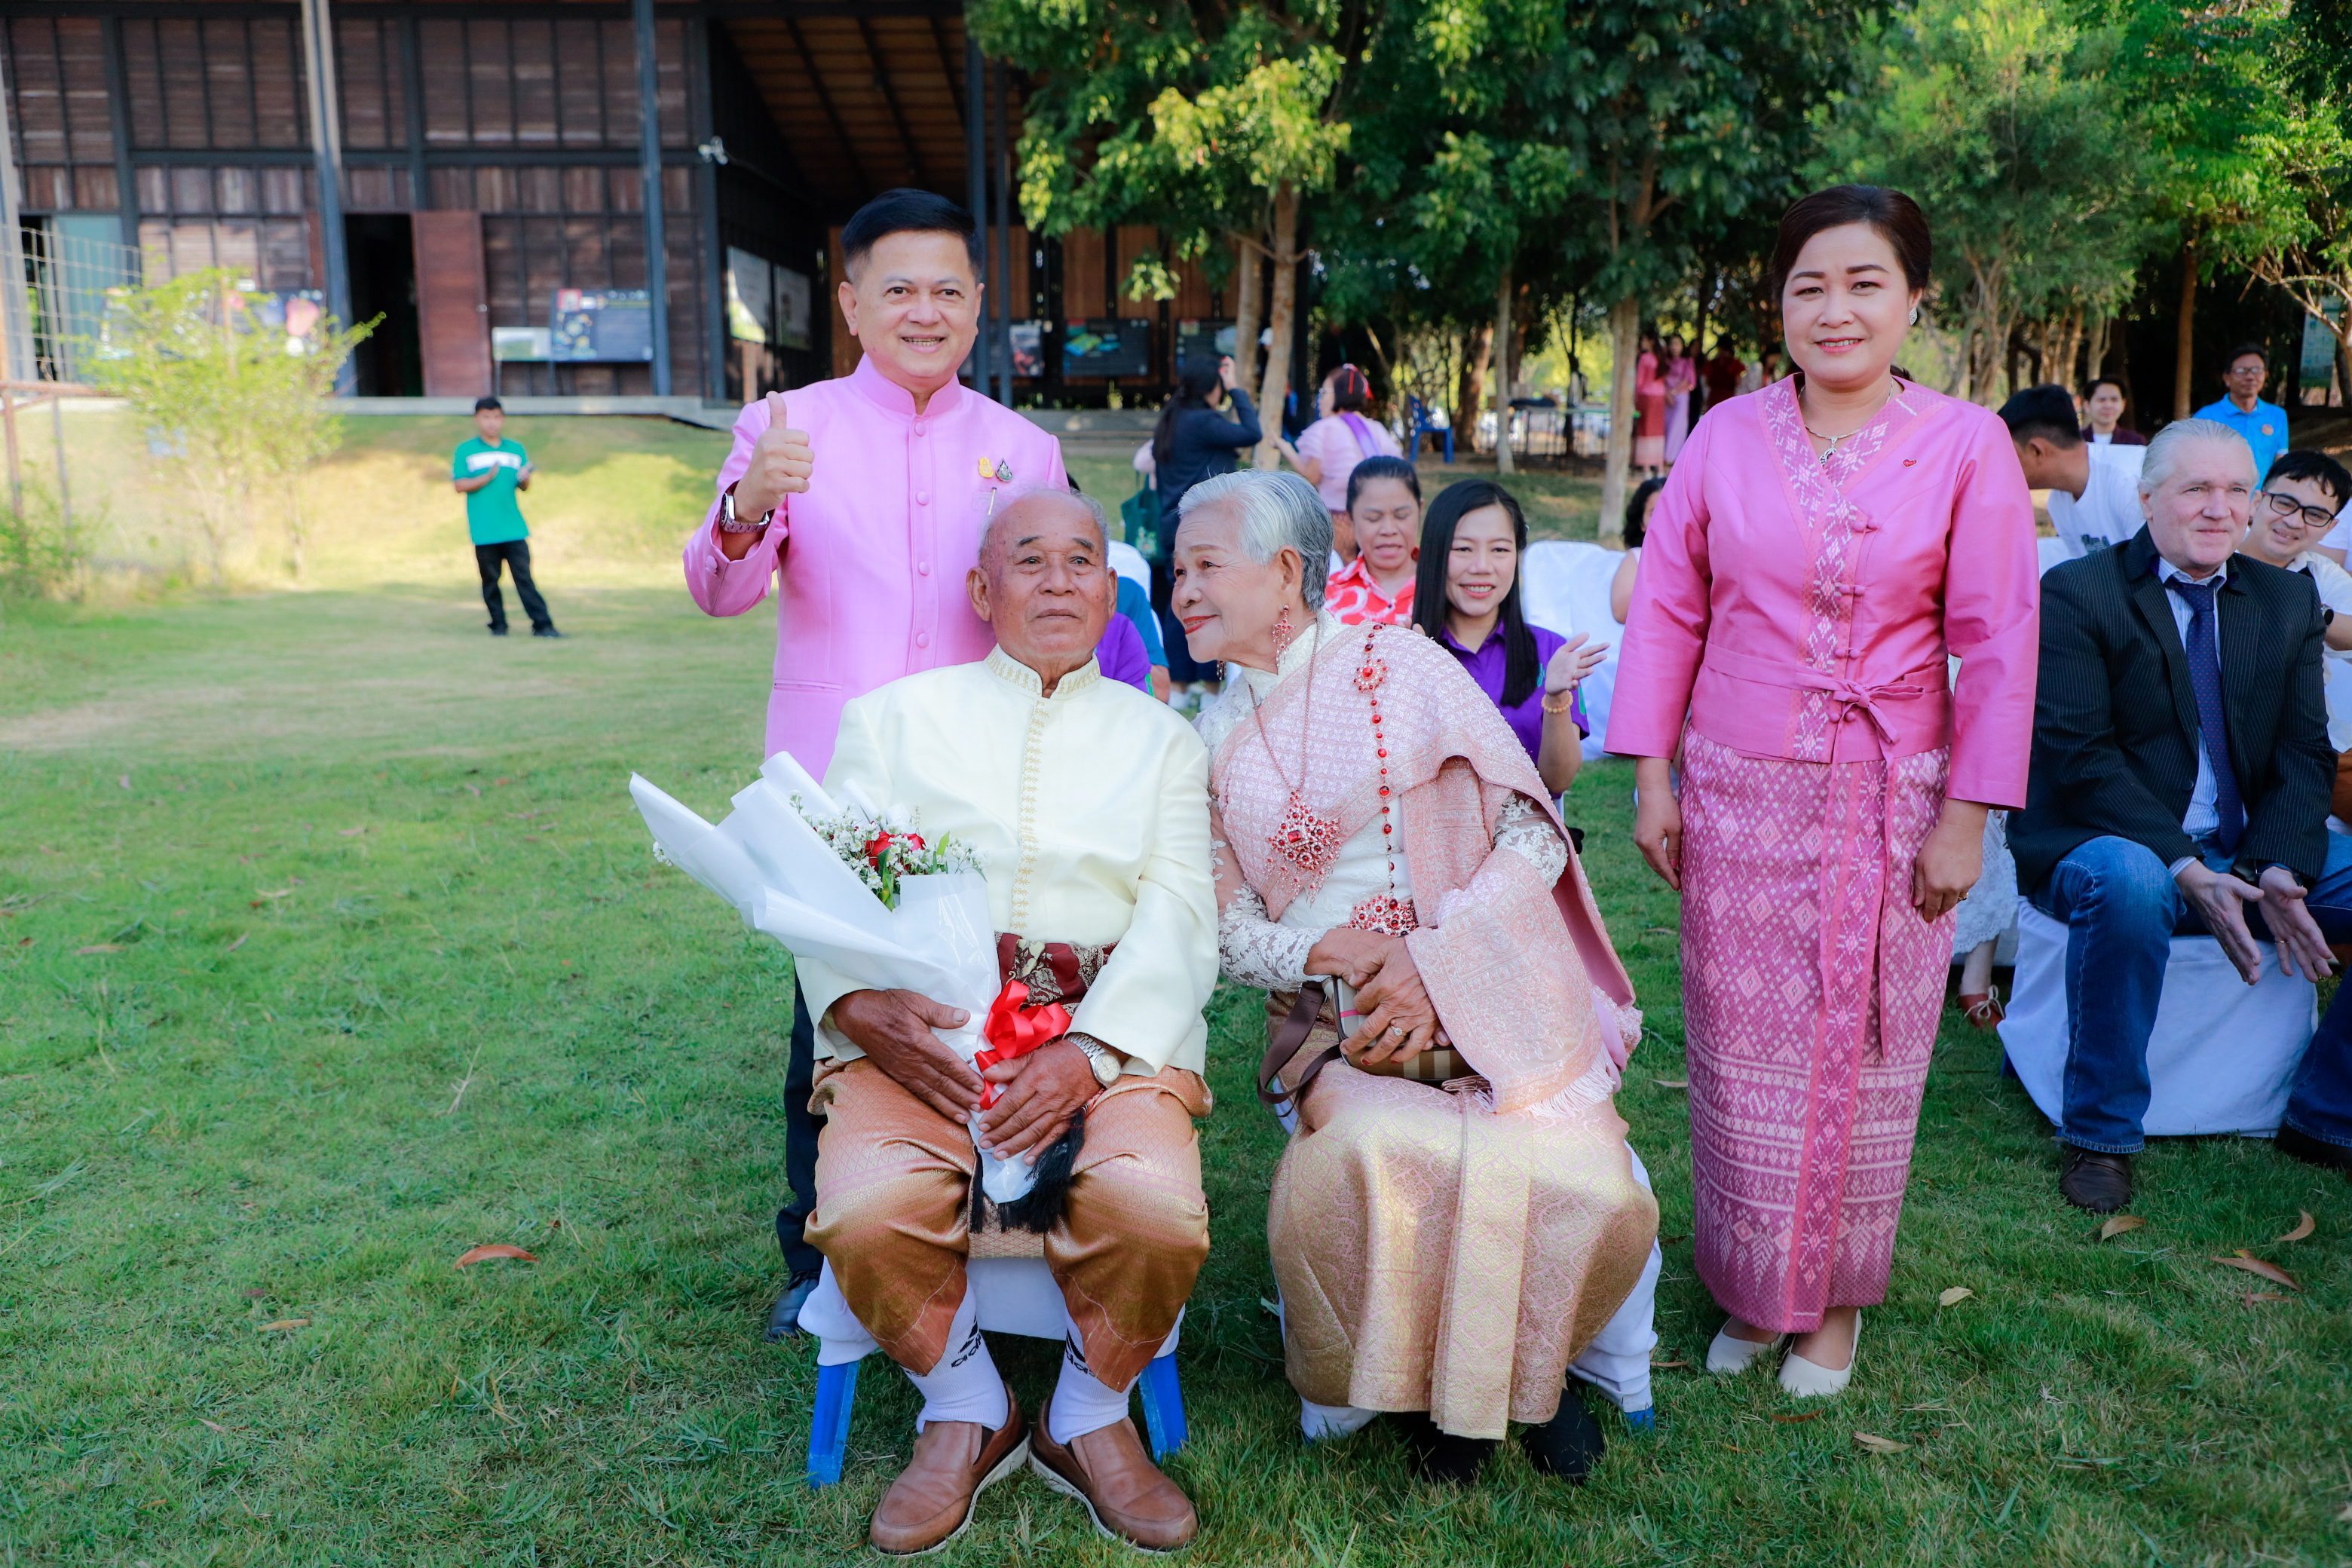 จังหวัดบุรีรัมย์ จัดพิธีจดทะเบียนสมรส “รักมั่นคง ยืนยง ดั่งนกกระเรียน” มีคู่รักไทย-ต่างชาติ 15 คู่ แต่งชุดผ้าไทย จดทะเบียนสมรส ที่ศูนย์เรียนรู้พื้นที่ชุ่มน้ำและนกกระเรียนพันธุ์ไทย เนื่องในวันแห่งความรัก มีคุณตา-คุณยาย ที่ครองรักยาวนานถึง 60 ปี จูงมือกันจดทะเบียนสมรสในครั้งนี้ด้วย